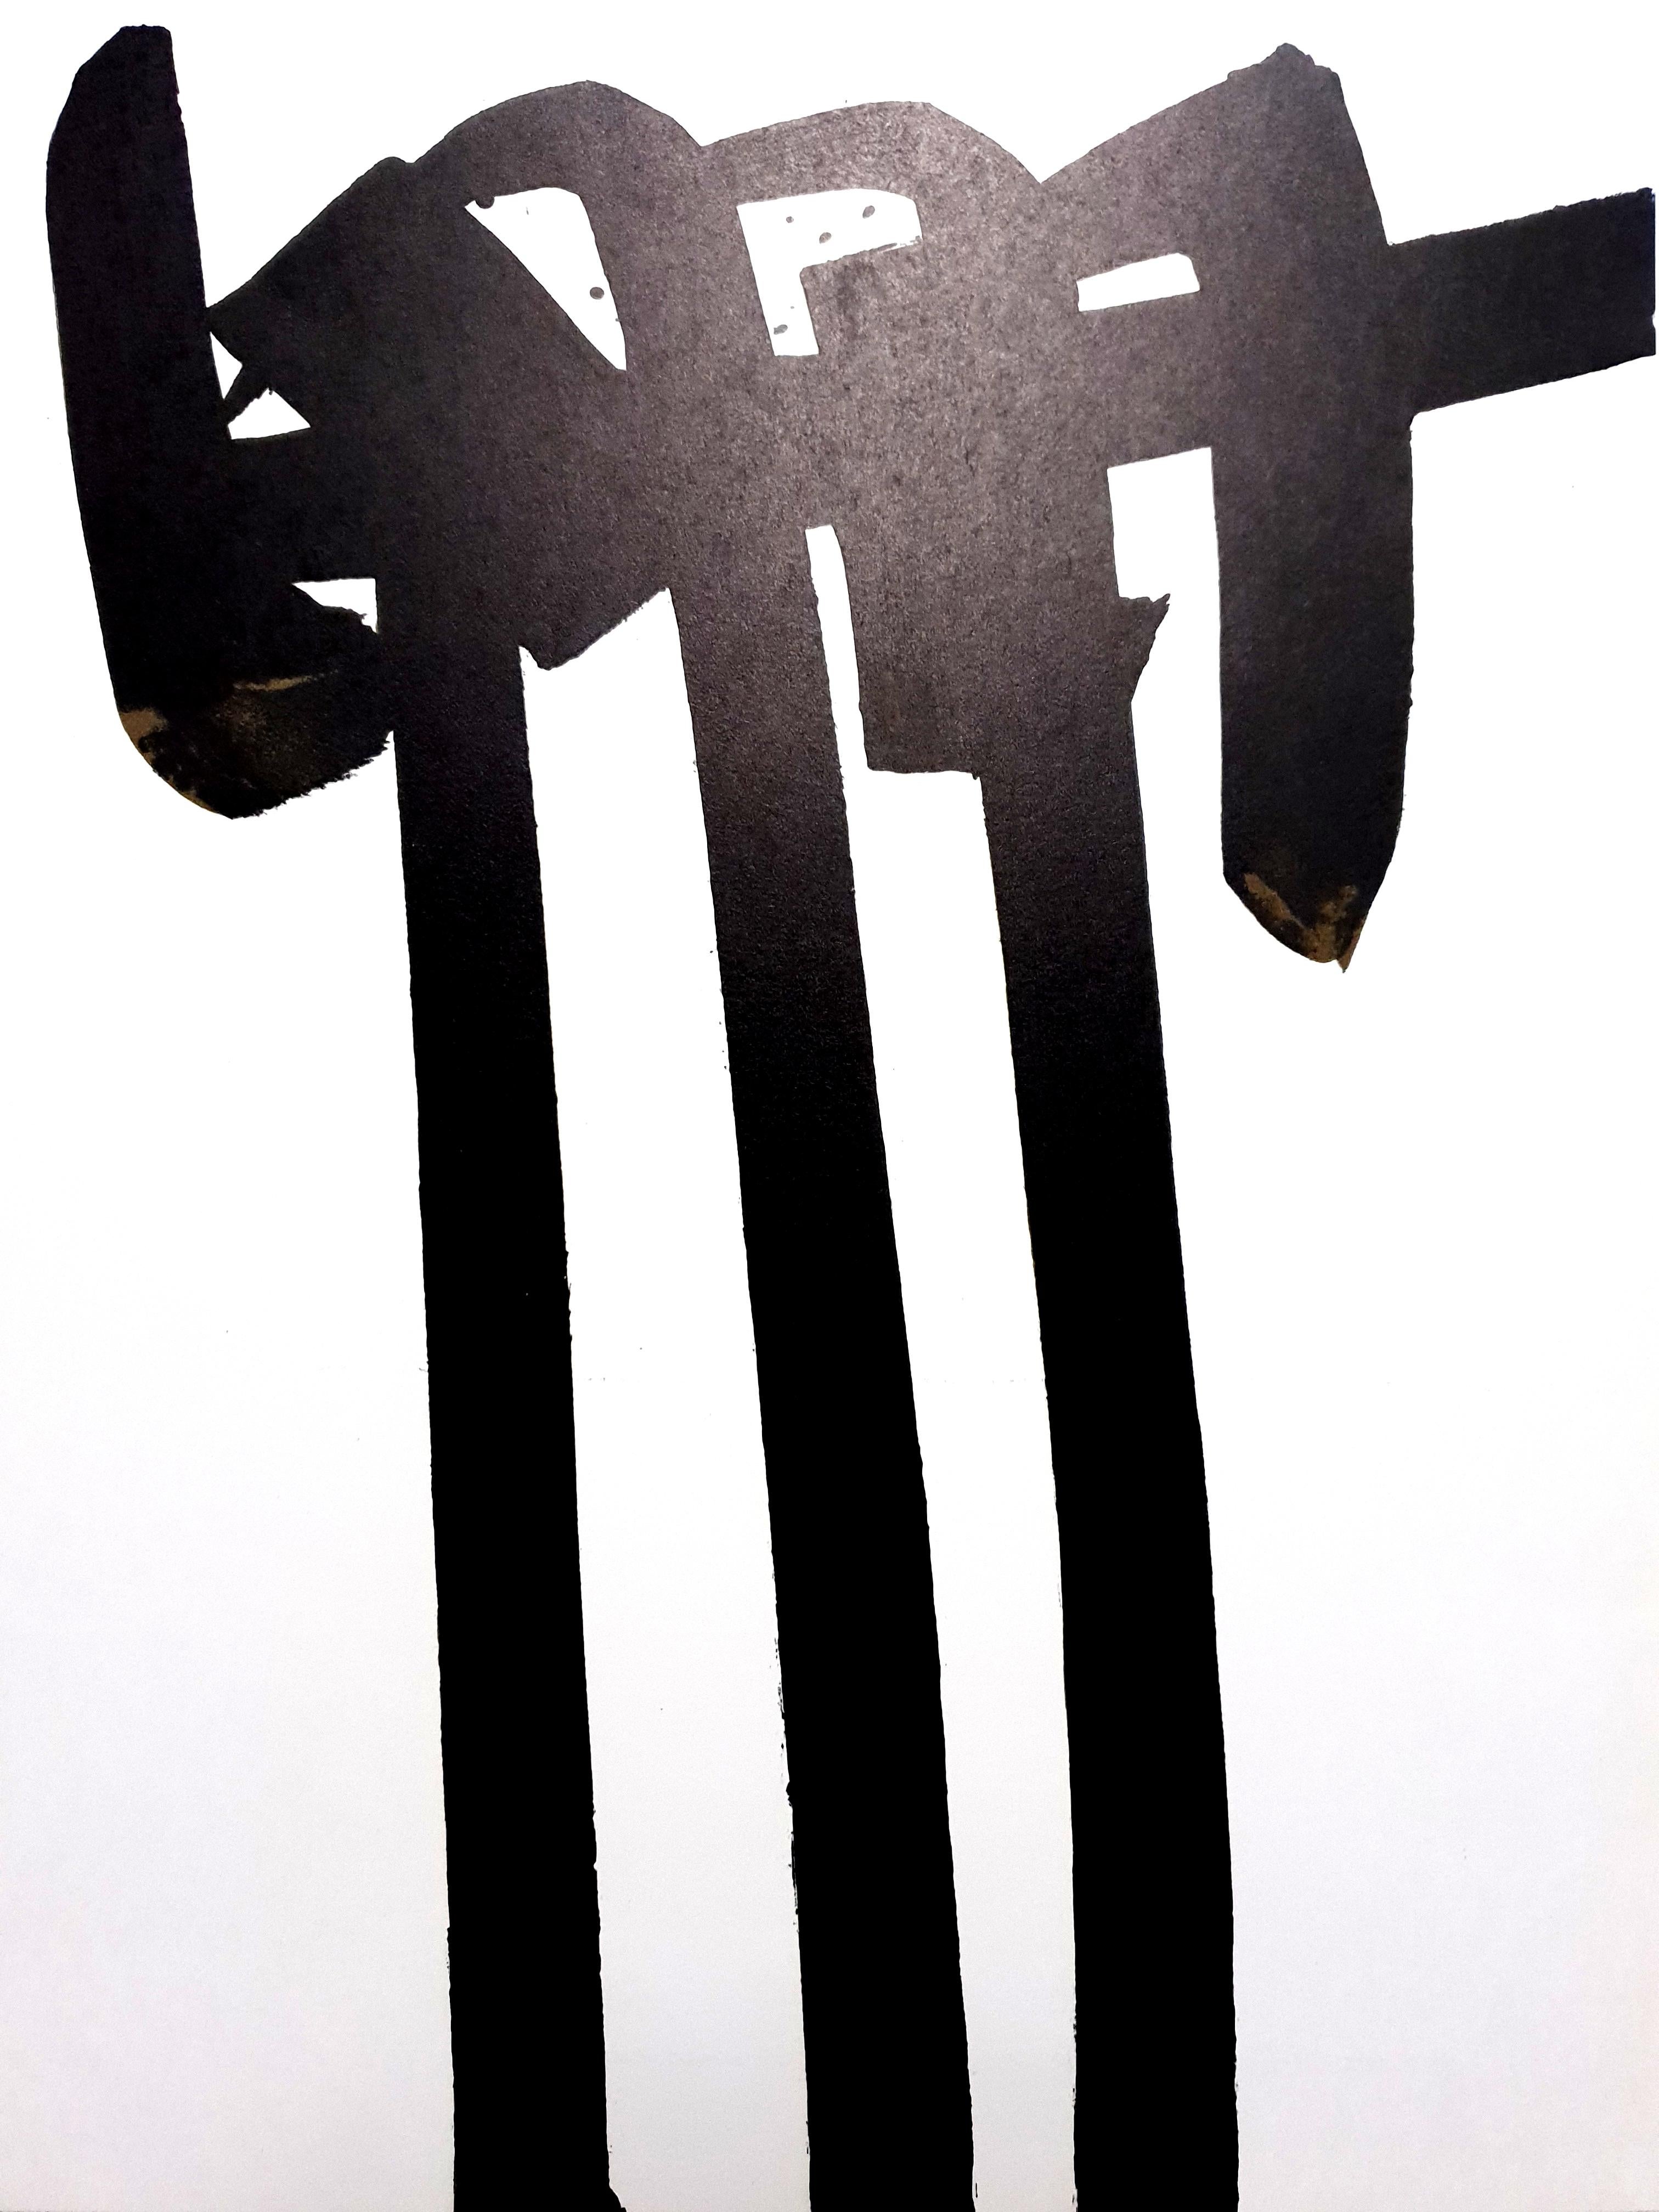 Pierre Soulages - Lithographie originale
Publié dans la revue d'art de luxe "XXe siècle"
1970
Non signé tel que publié
Dimensions : 32 x 24 cm

Pierre Soulages ou le "peintre du noir", comme on l'appelle souvent, est devenu à juste titre l'une des